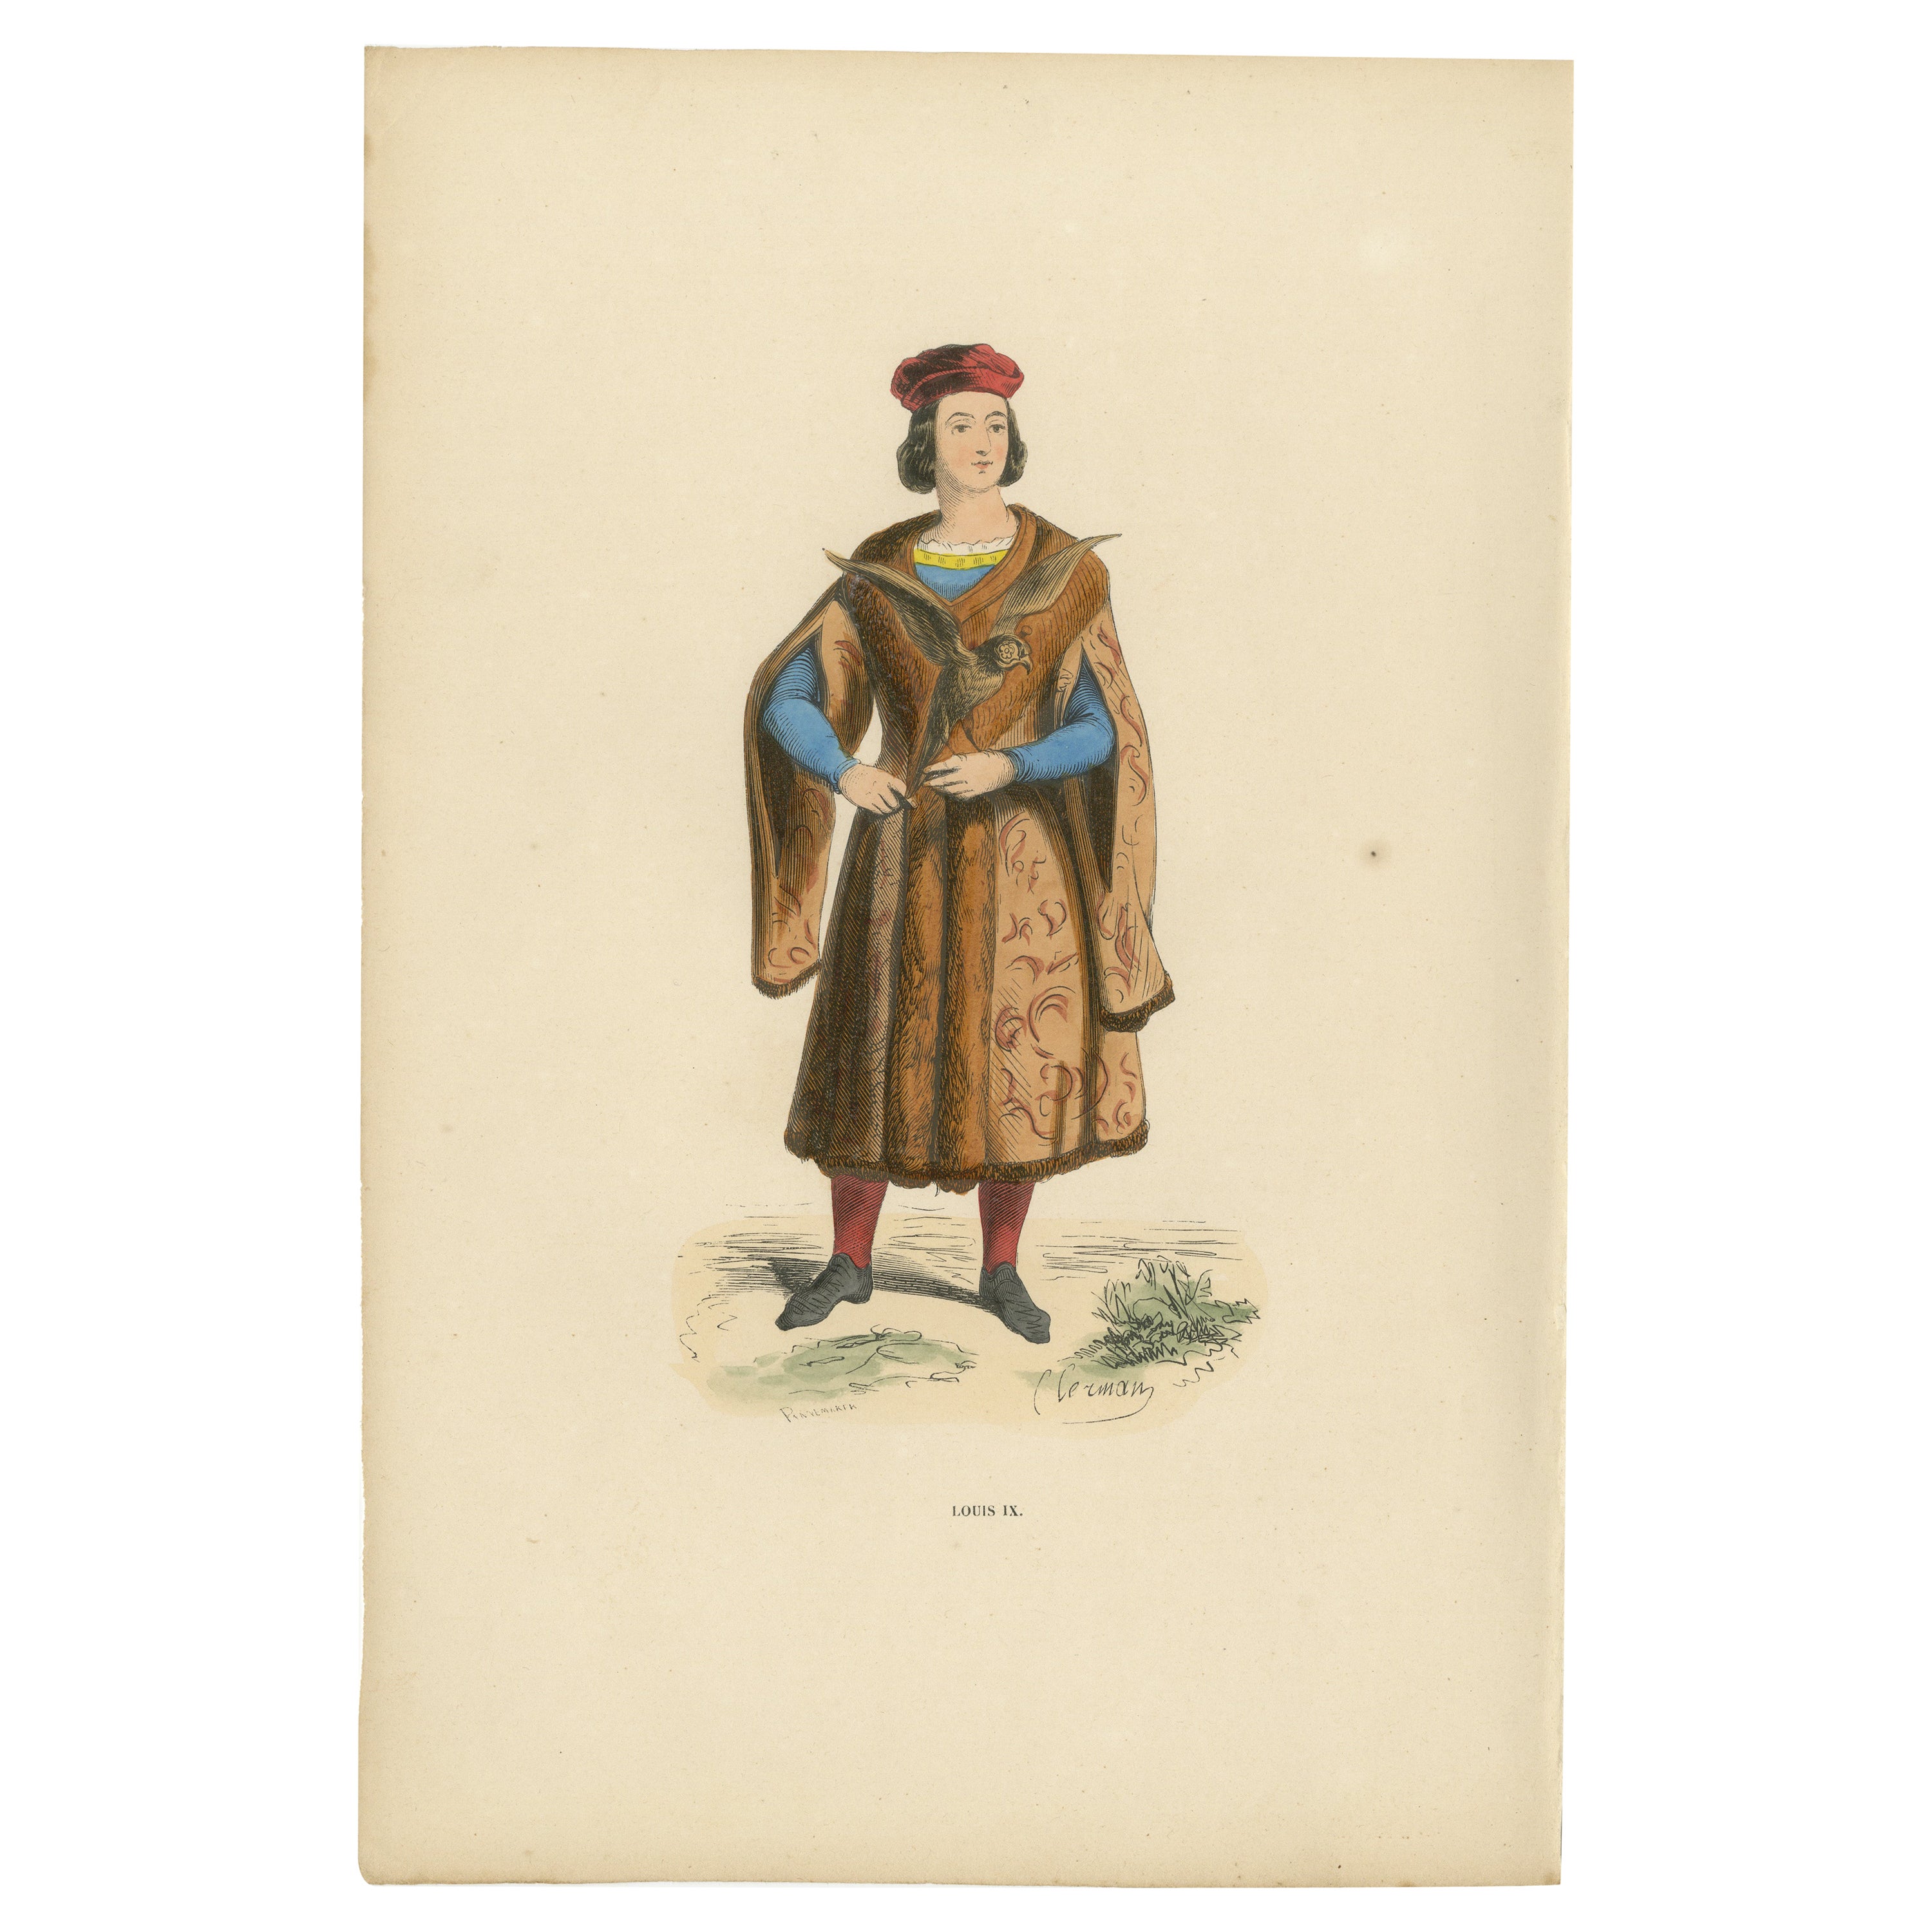 Louis IX.: A Porträt der französischen Königshäuser im mittelalterlichen Attire, veröffentlicht 1847